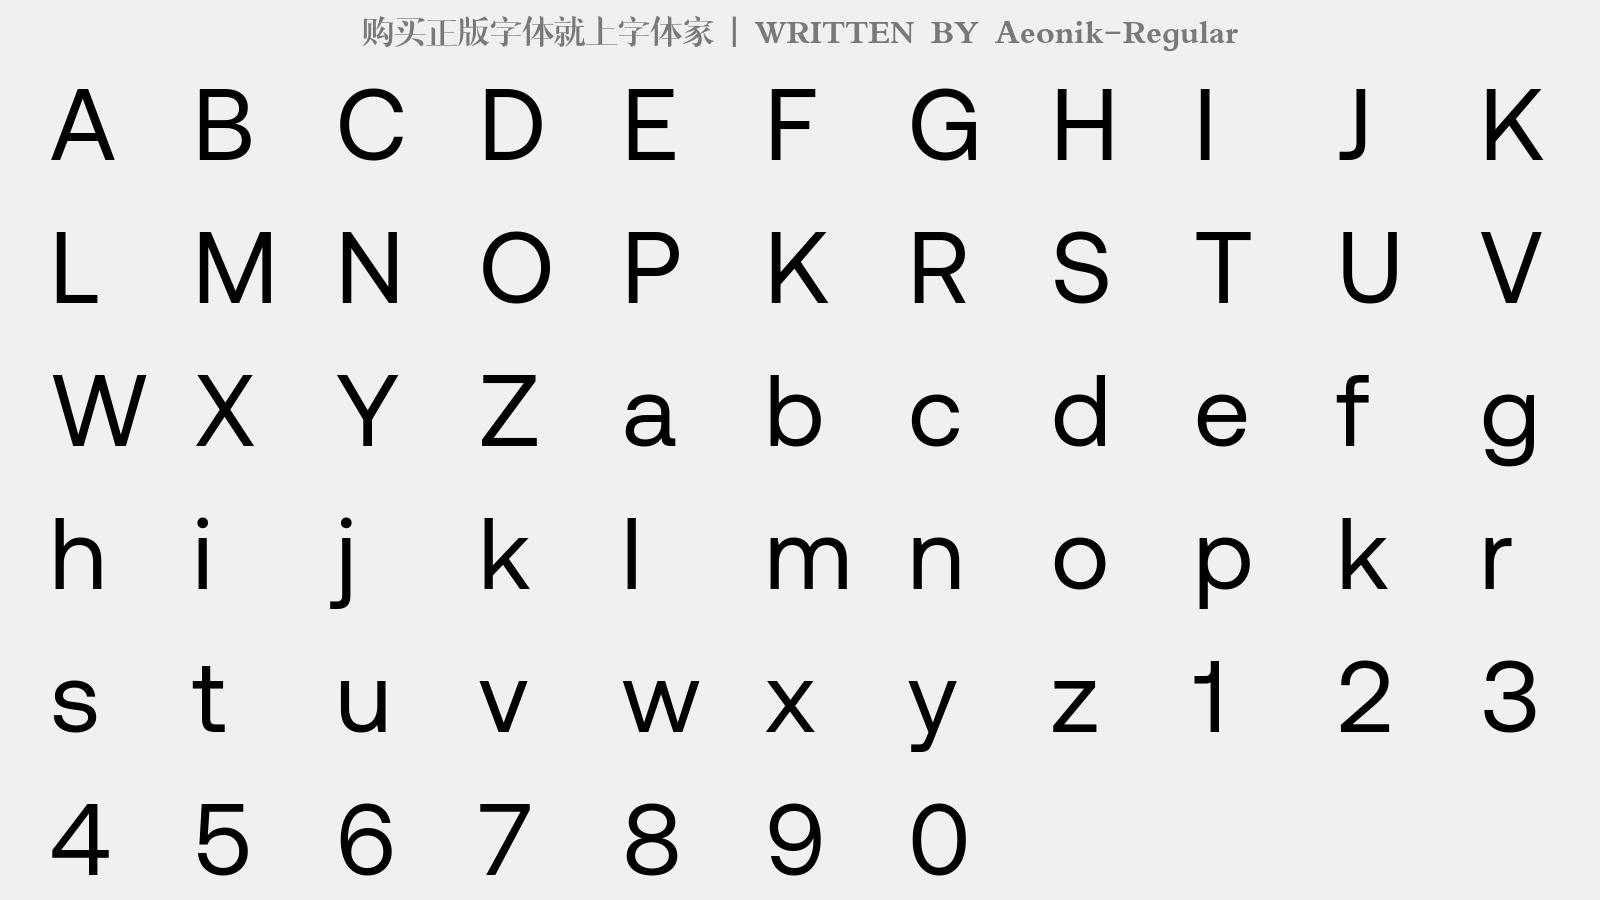 Aeonik-Regular - 大写字母/小写字母/数字